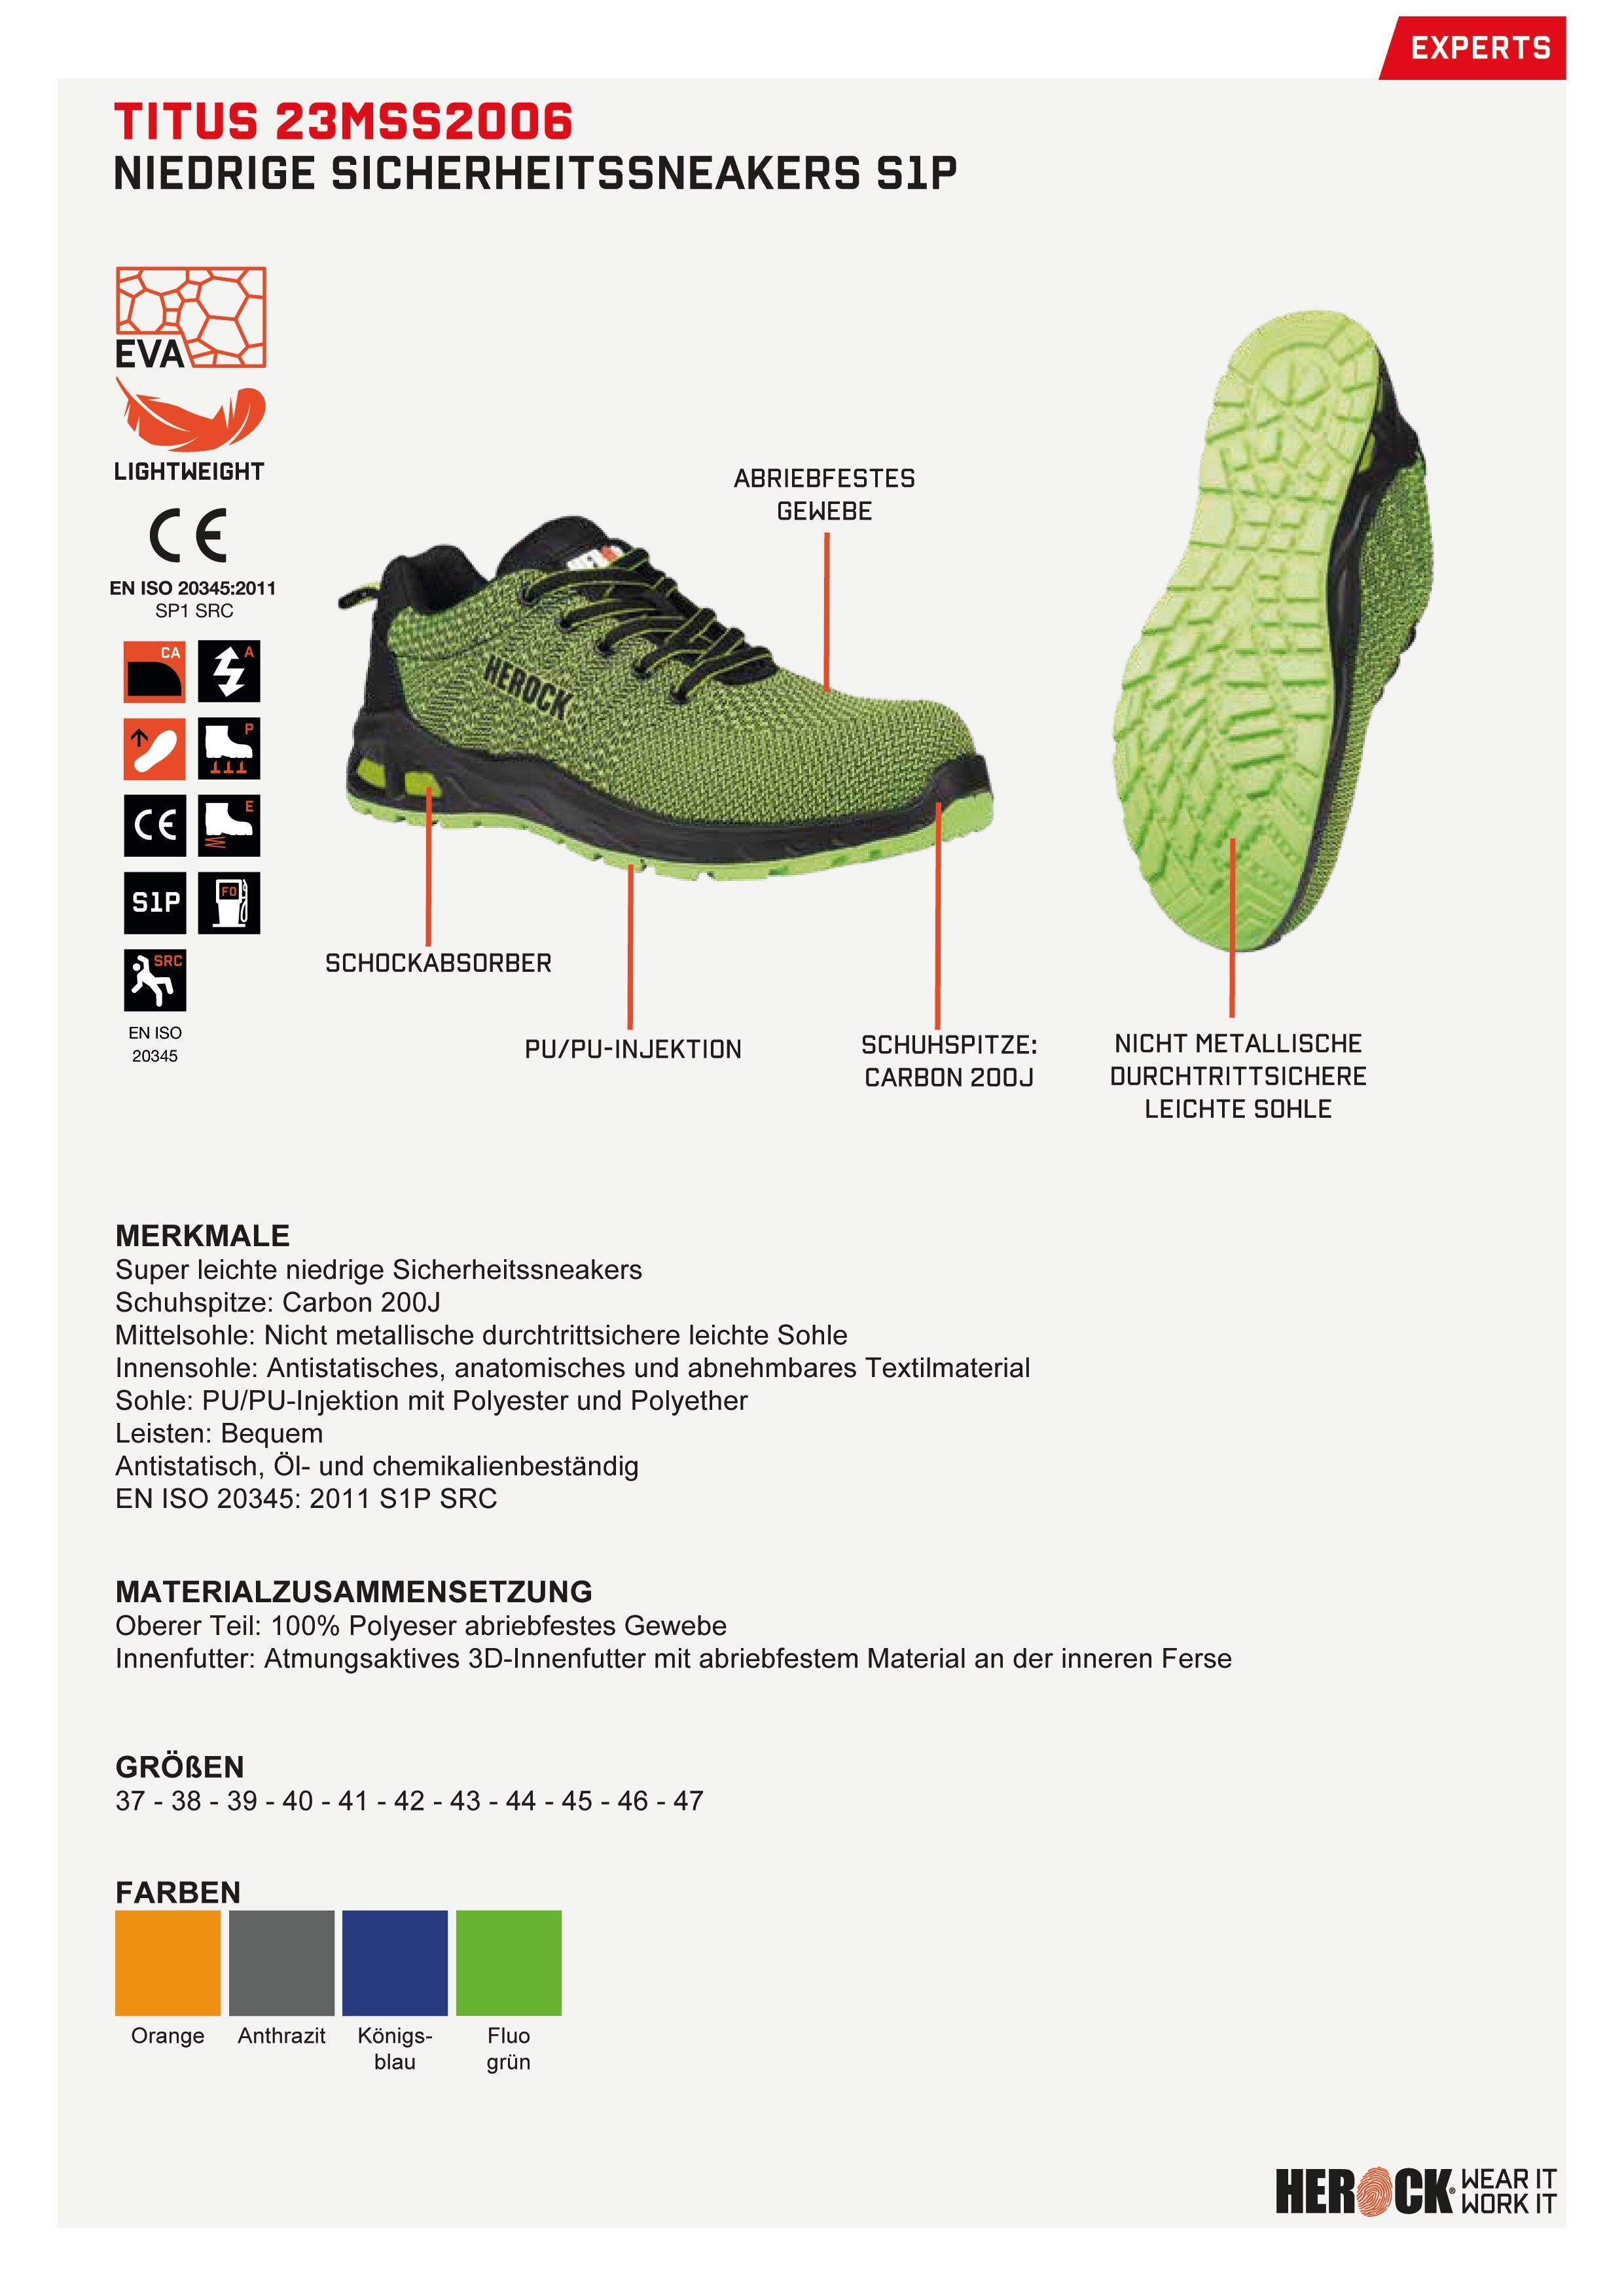 Herock Extrem leicht, Sicherheitssneakers Sicherheitsschuh fluo-grün durchtrittschutz, Titus Niederige S1P Fiberglaskappe, rutschhemmend